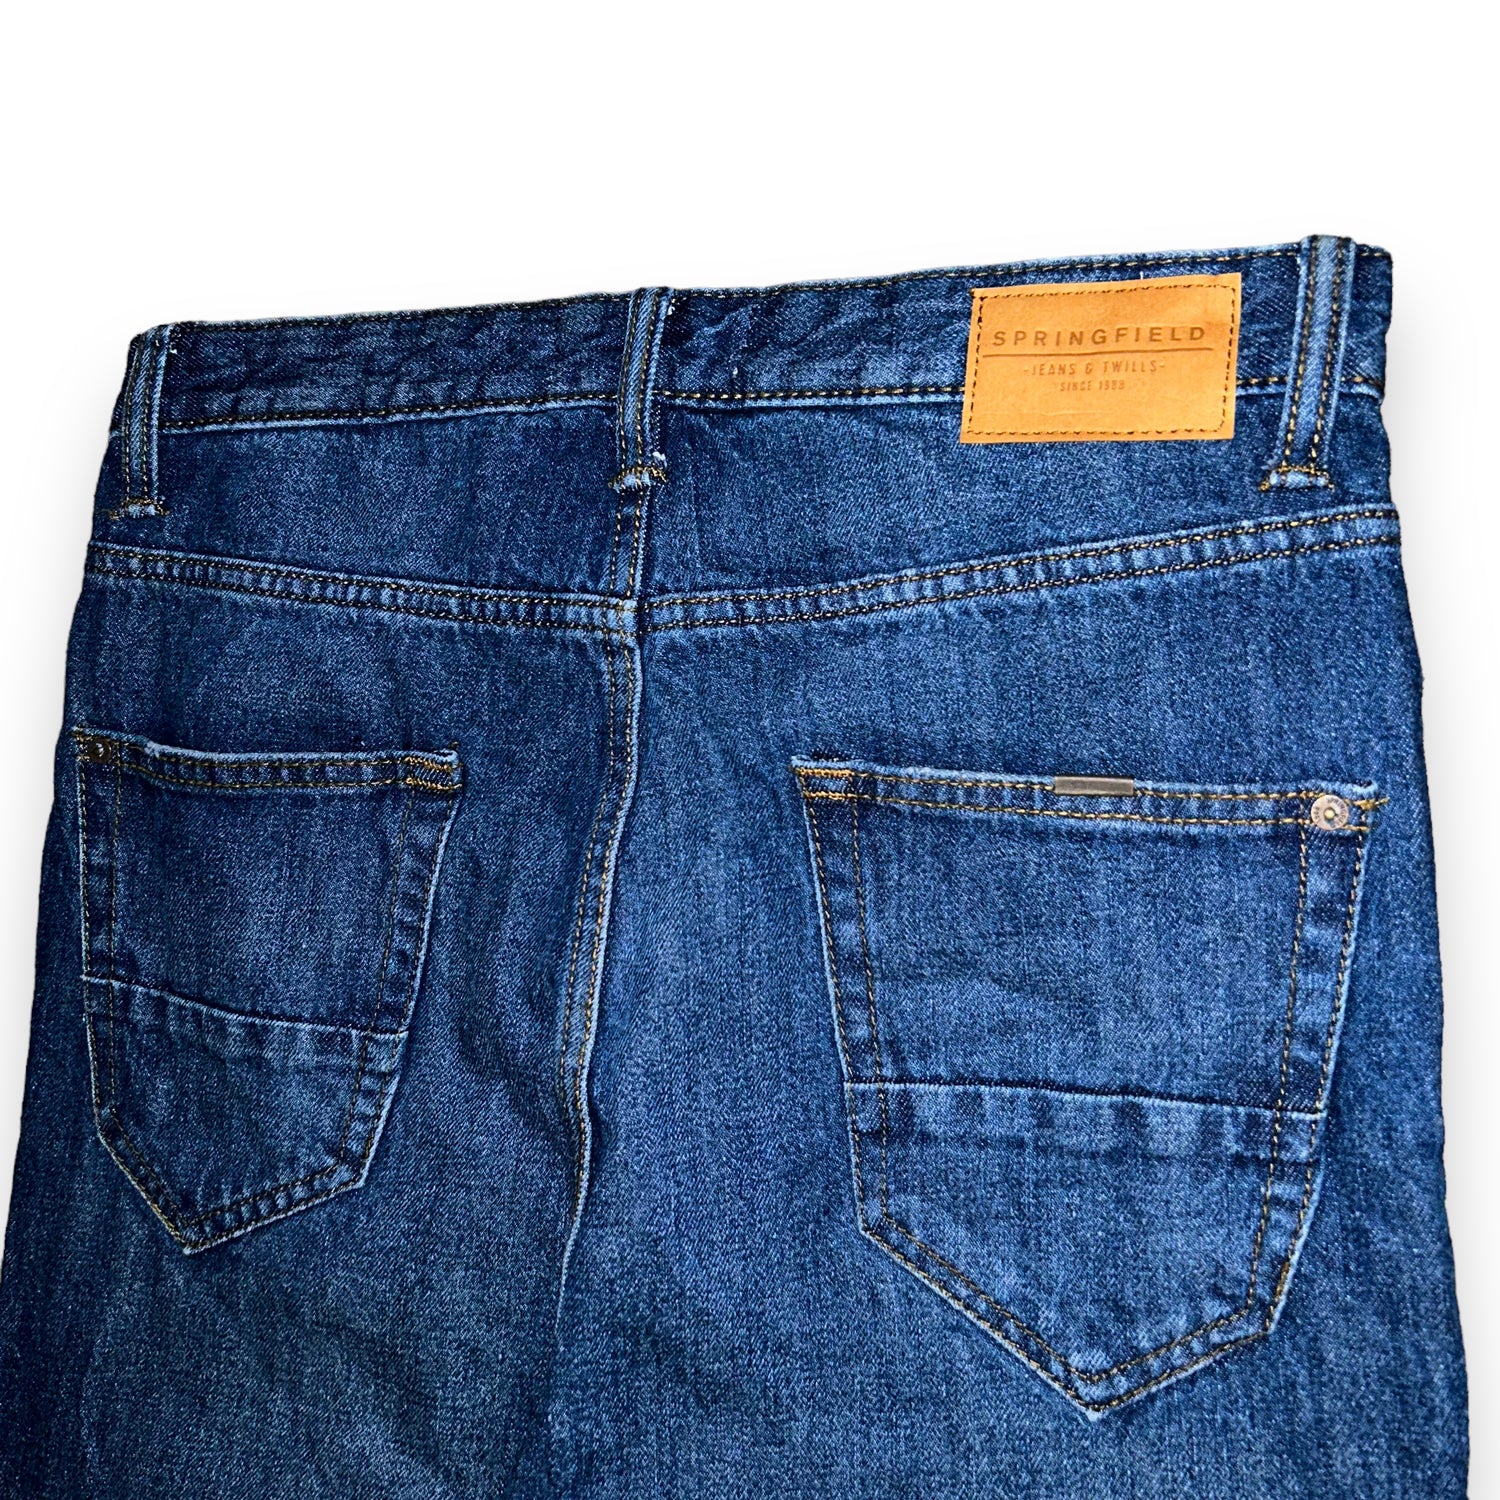 Tilintetgøre utilsigtet Normalt Springfield jeans (30 US S) – oldstyleclothing